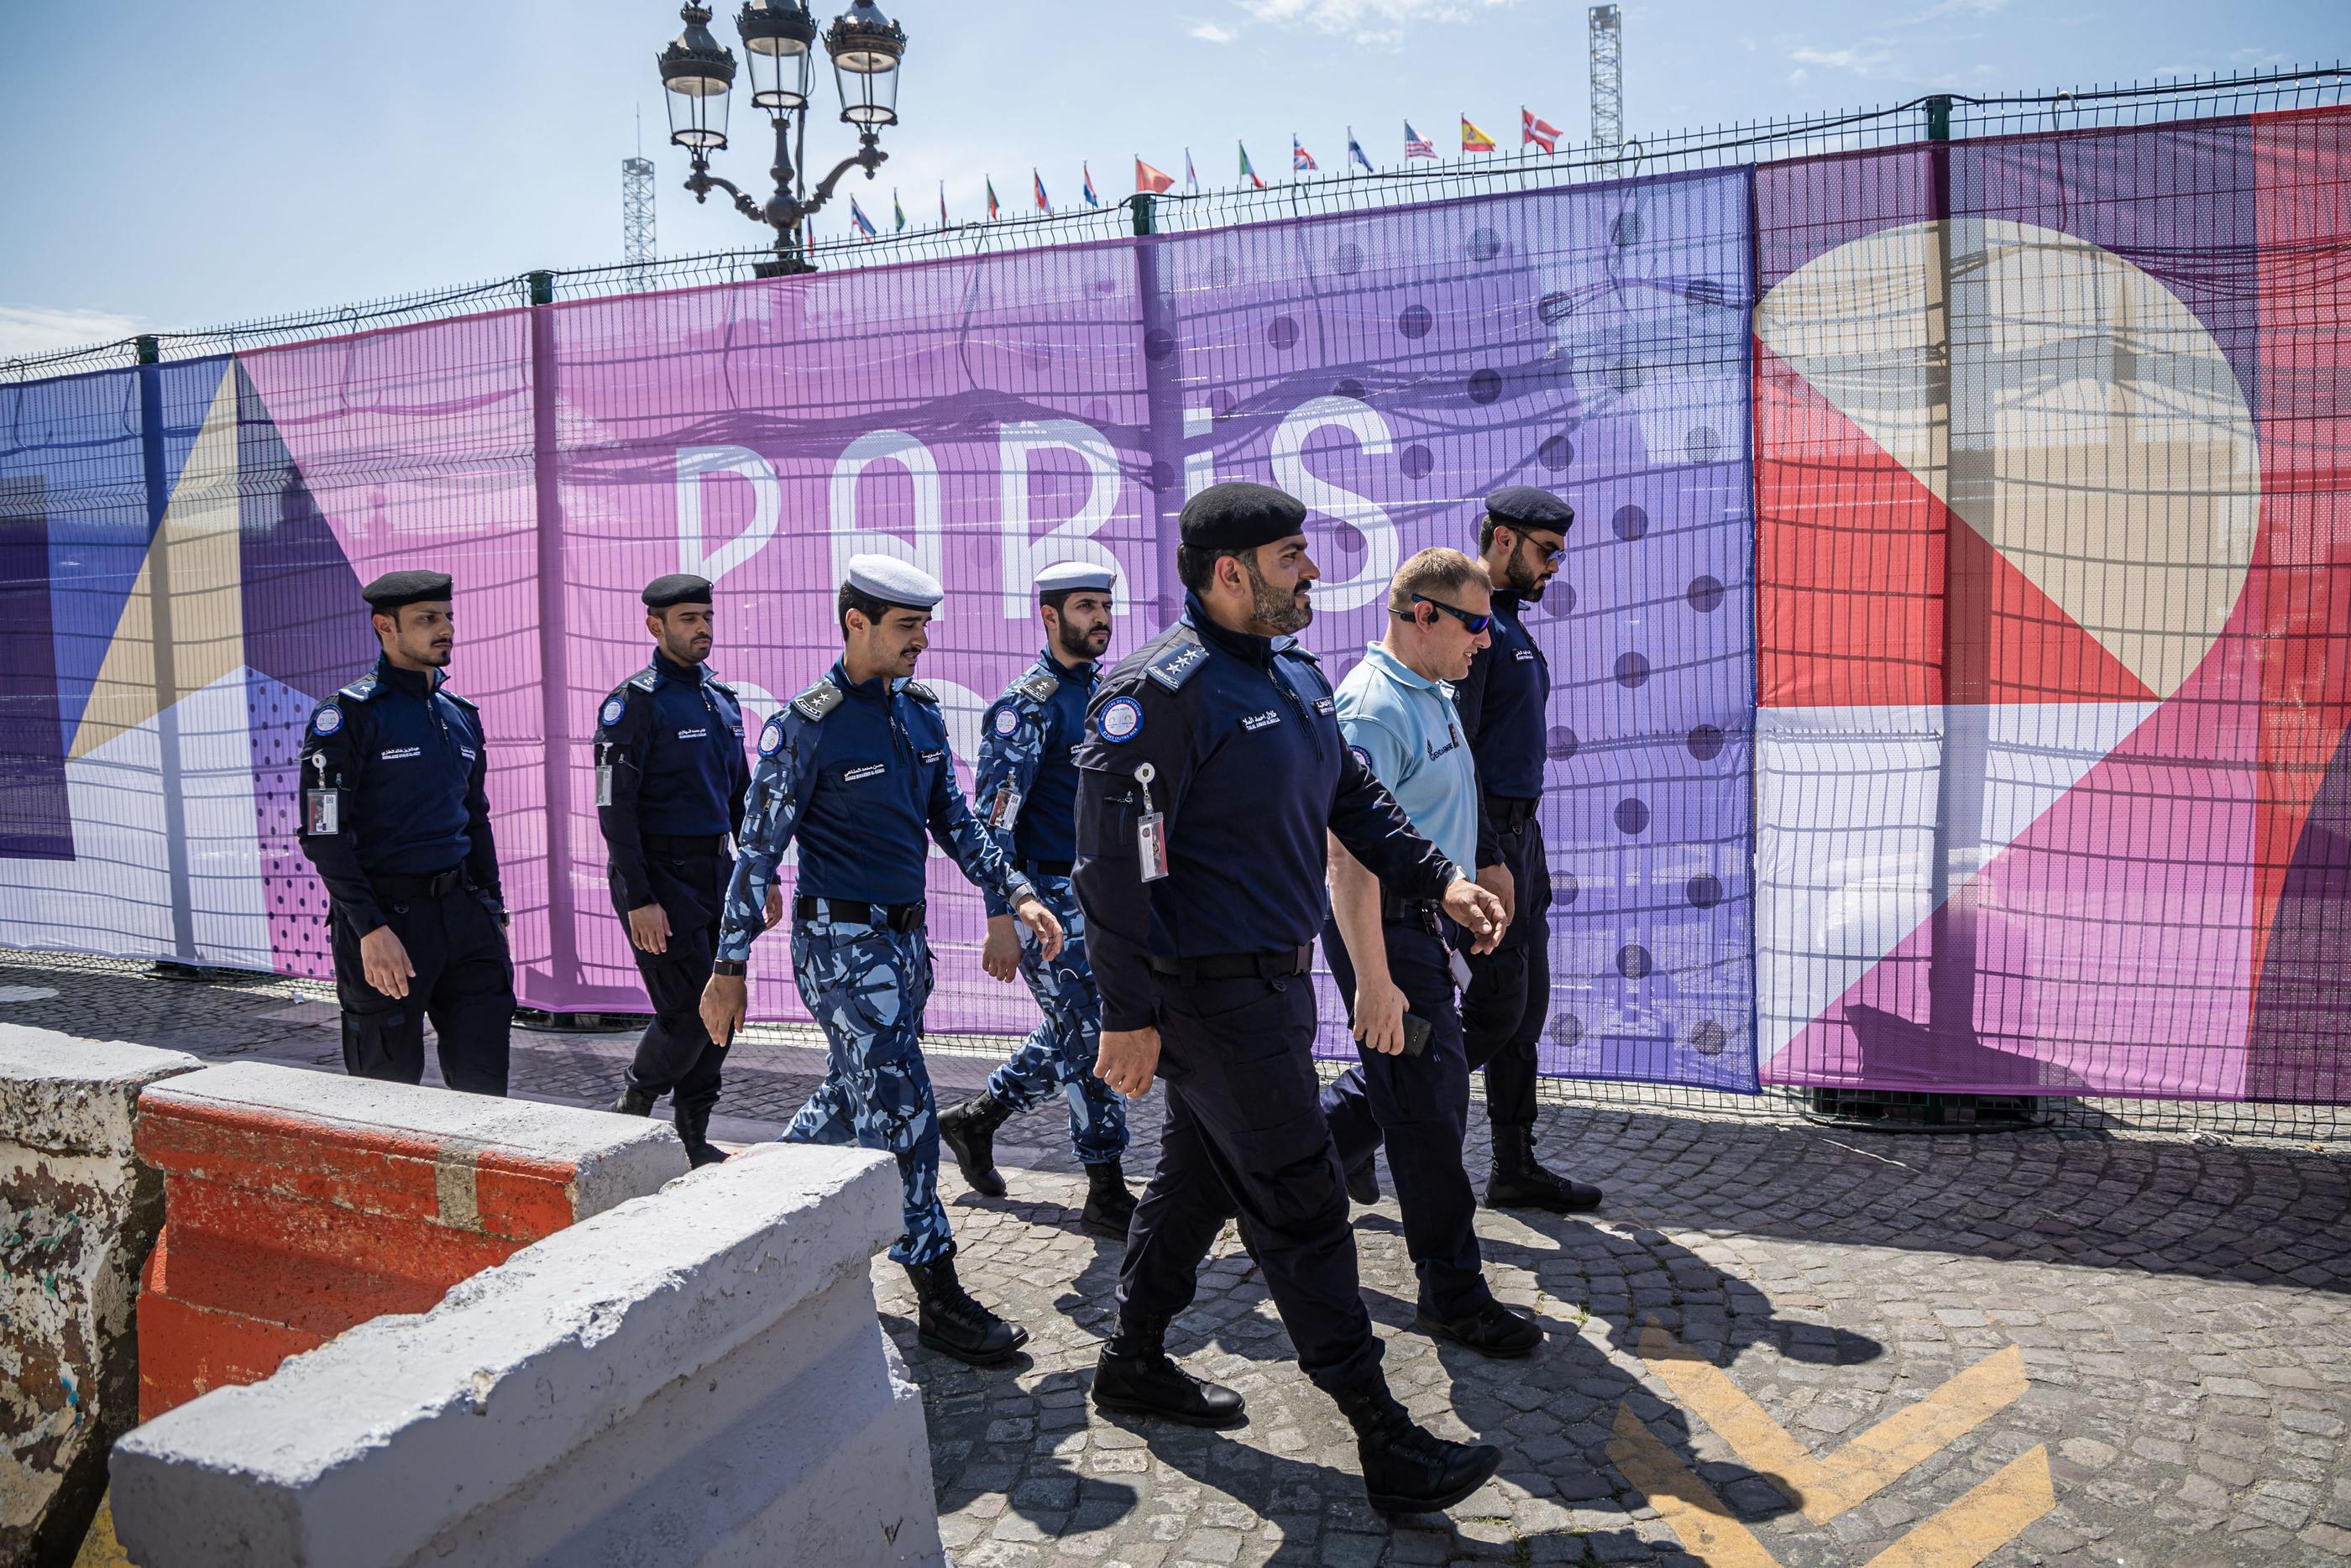 Les représentants qataris inspectent un site des Jeux olympiques à Paris avec un gendarme. MaxPPP/Christophe Petit Tesson